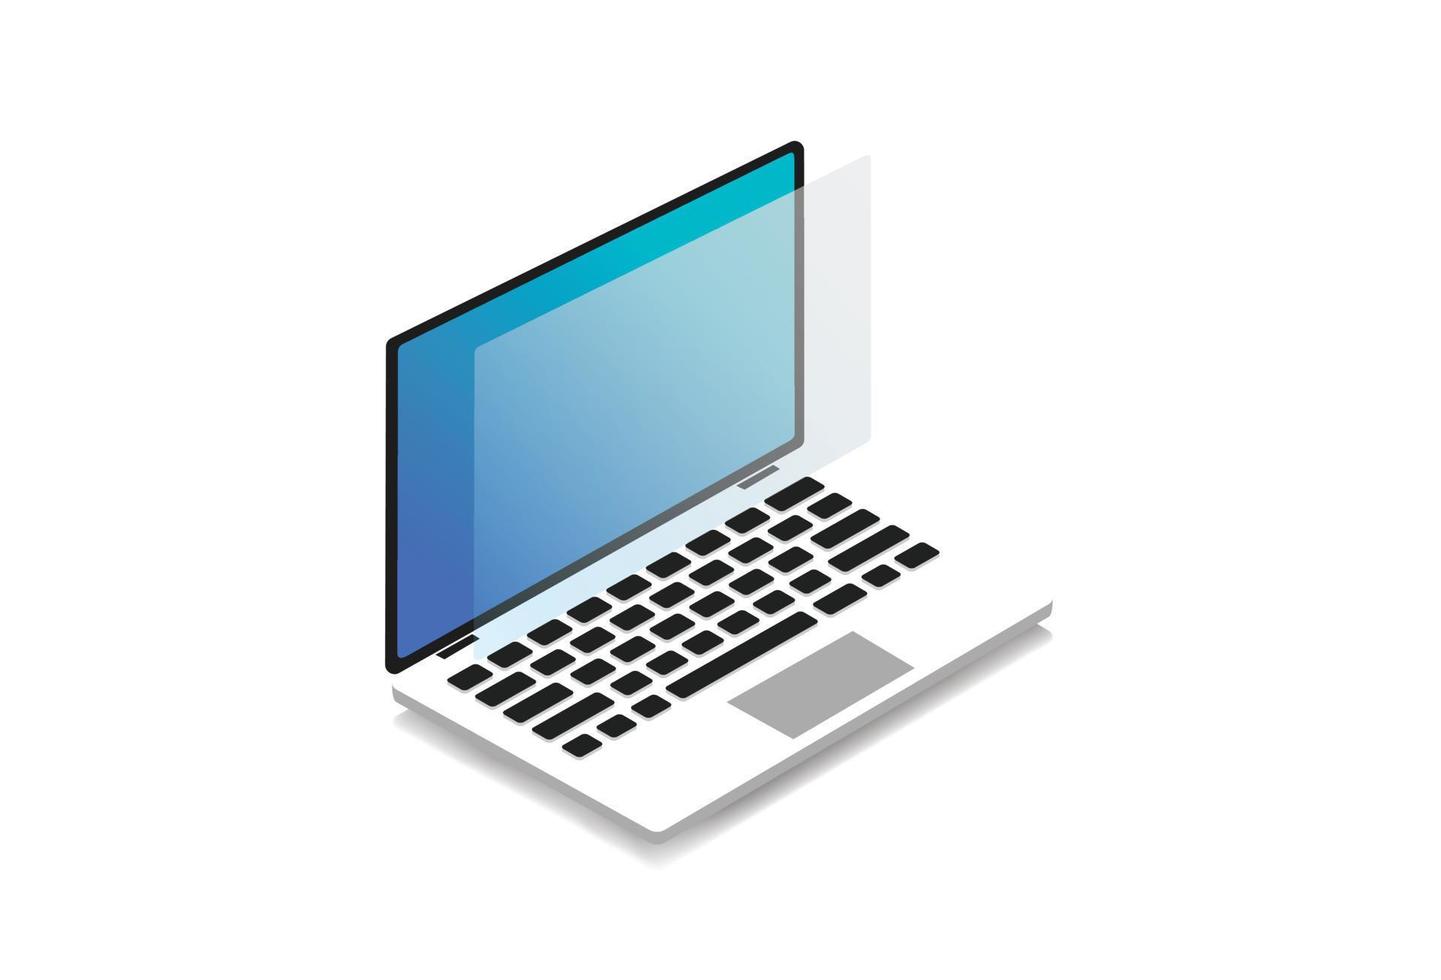 ordinateur portable isométrique technologie moderne icône minimale illustration vecteur